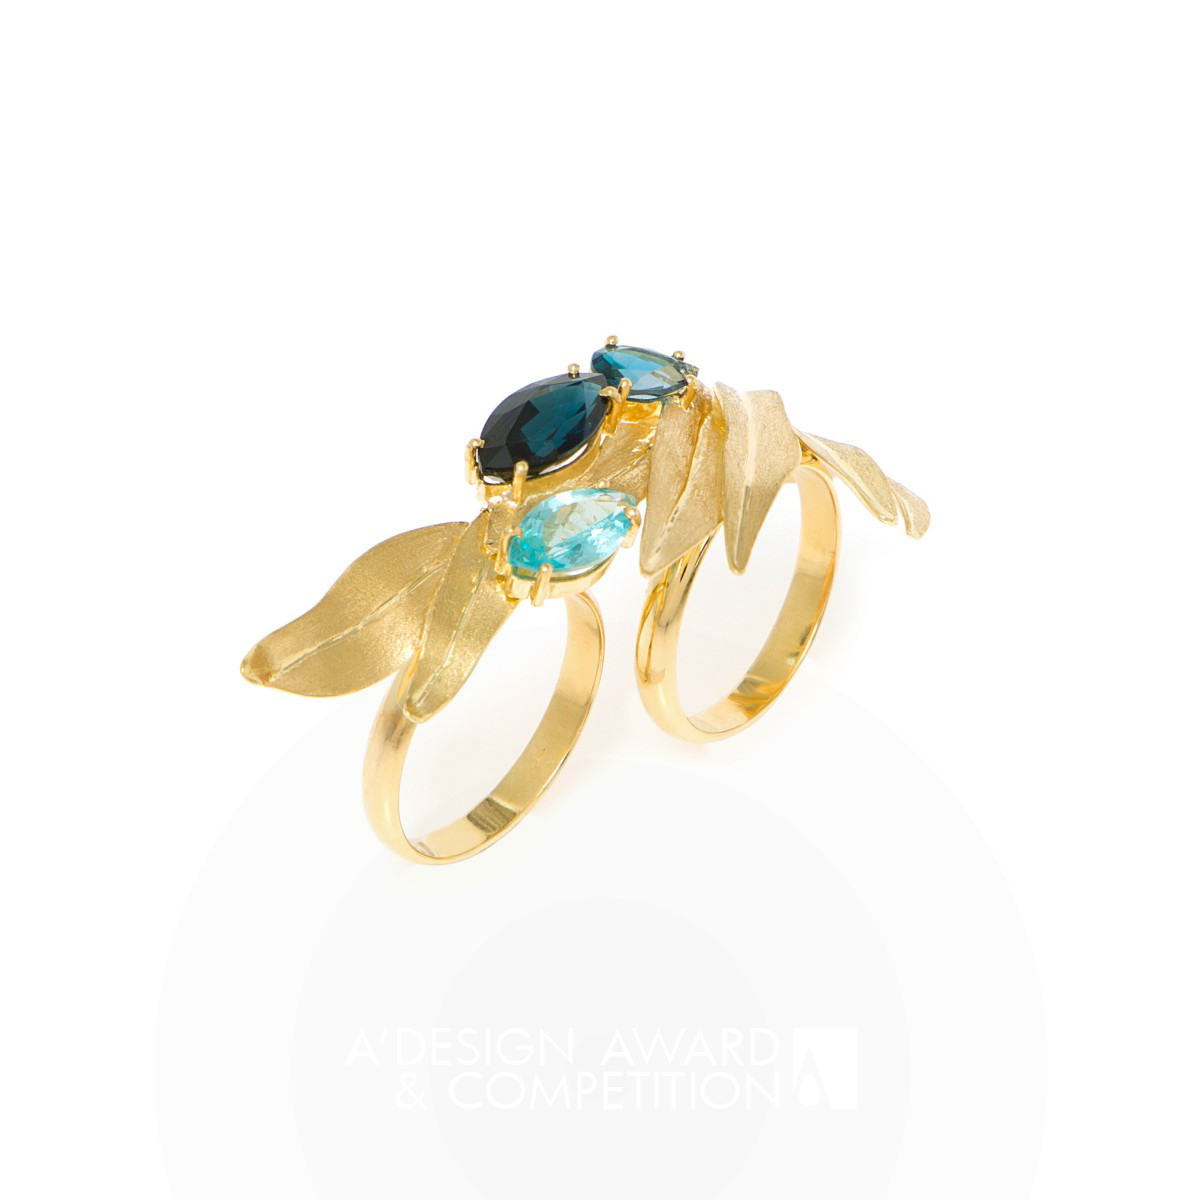 Irises Ring by Larissa Moraes Iron Jewelry Design Award Winner 2024 